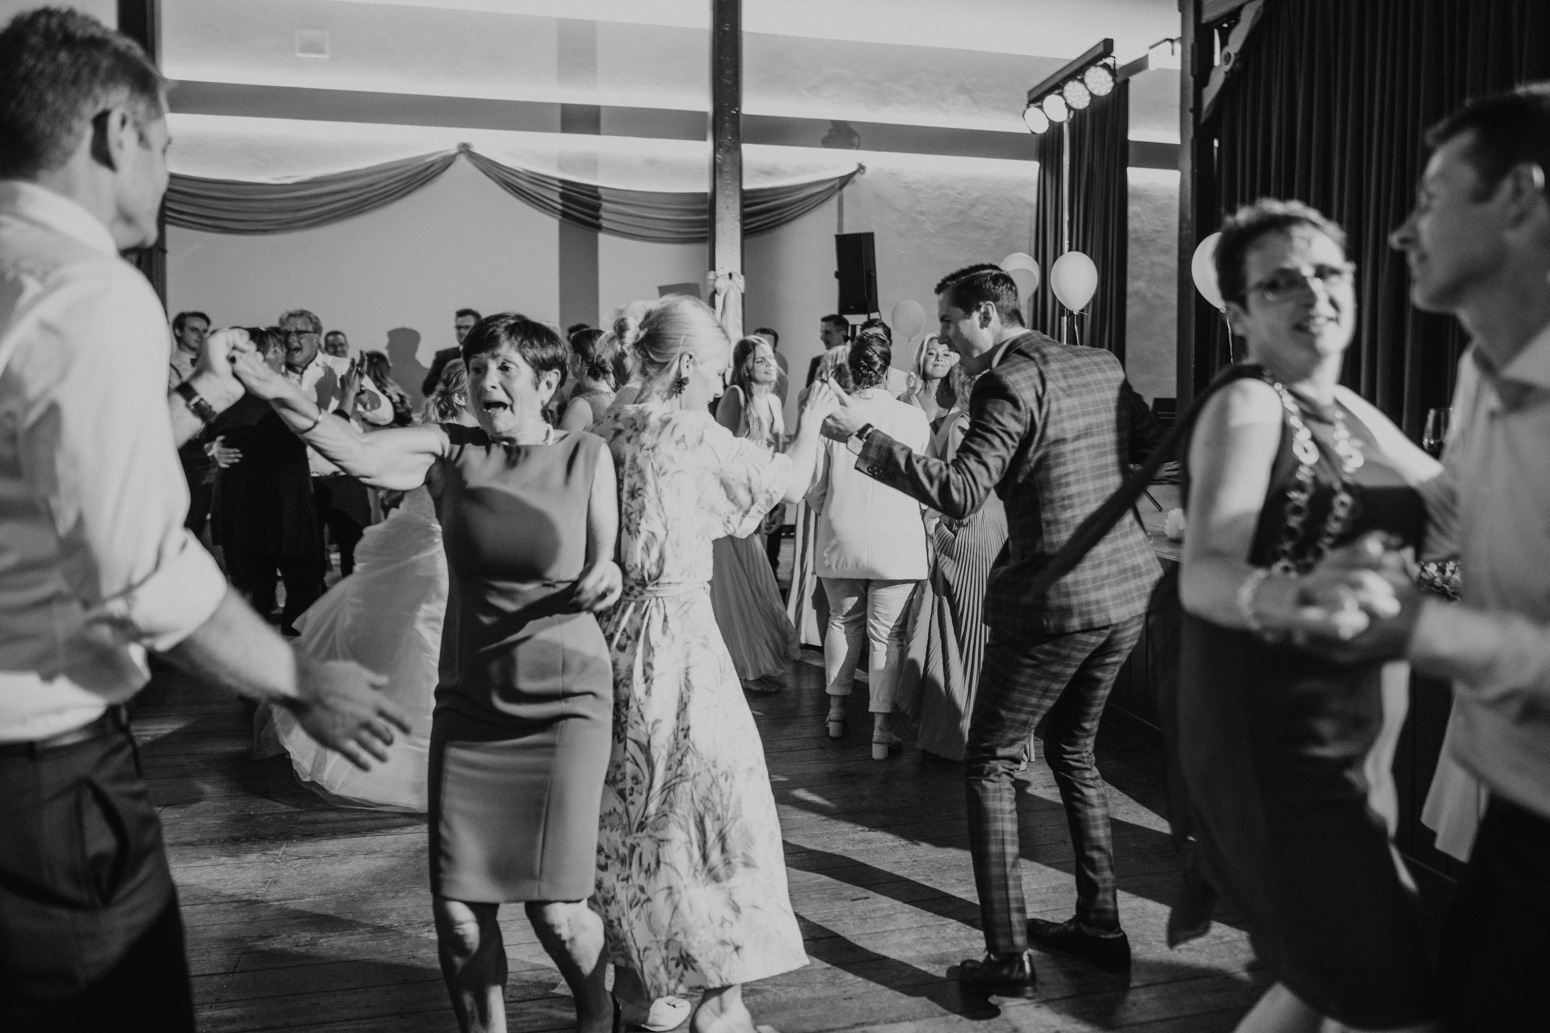 Hochzeitsparty und tanzende Gäste einer Hochzeitsfeier in der kleinen Beethovenhalle, Bad Godesberg. Hochzeitsfotograf Köln Bonn, Daria Becker von Genuine Bonds, NRW